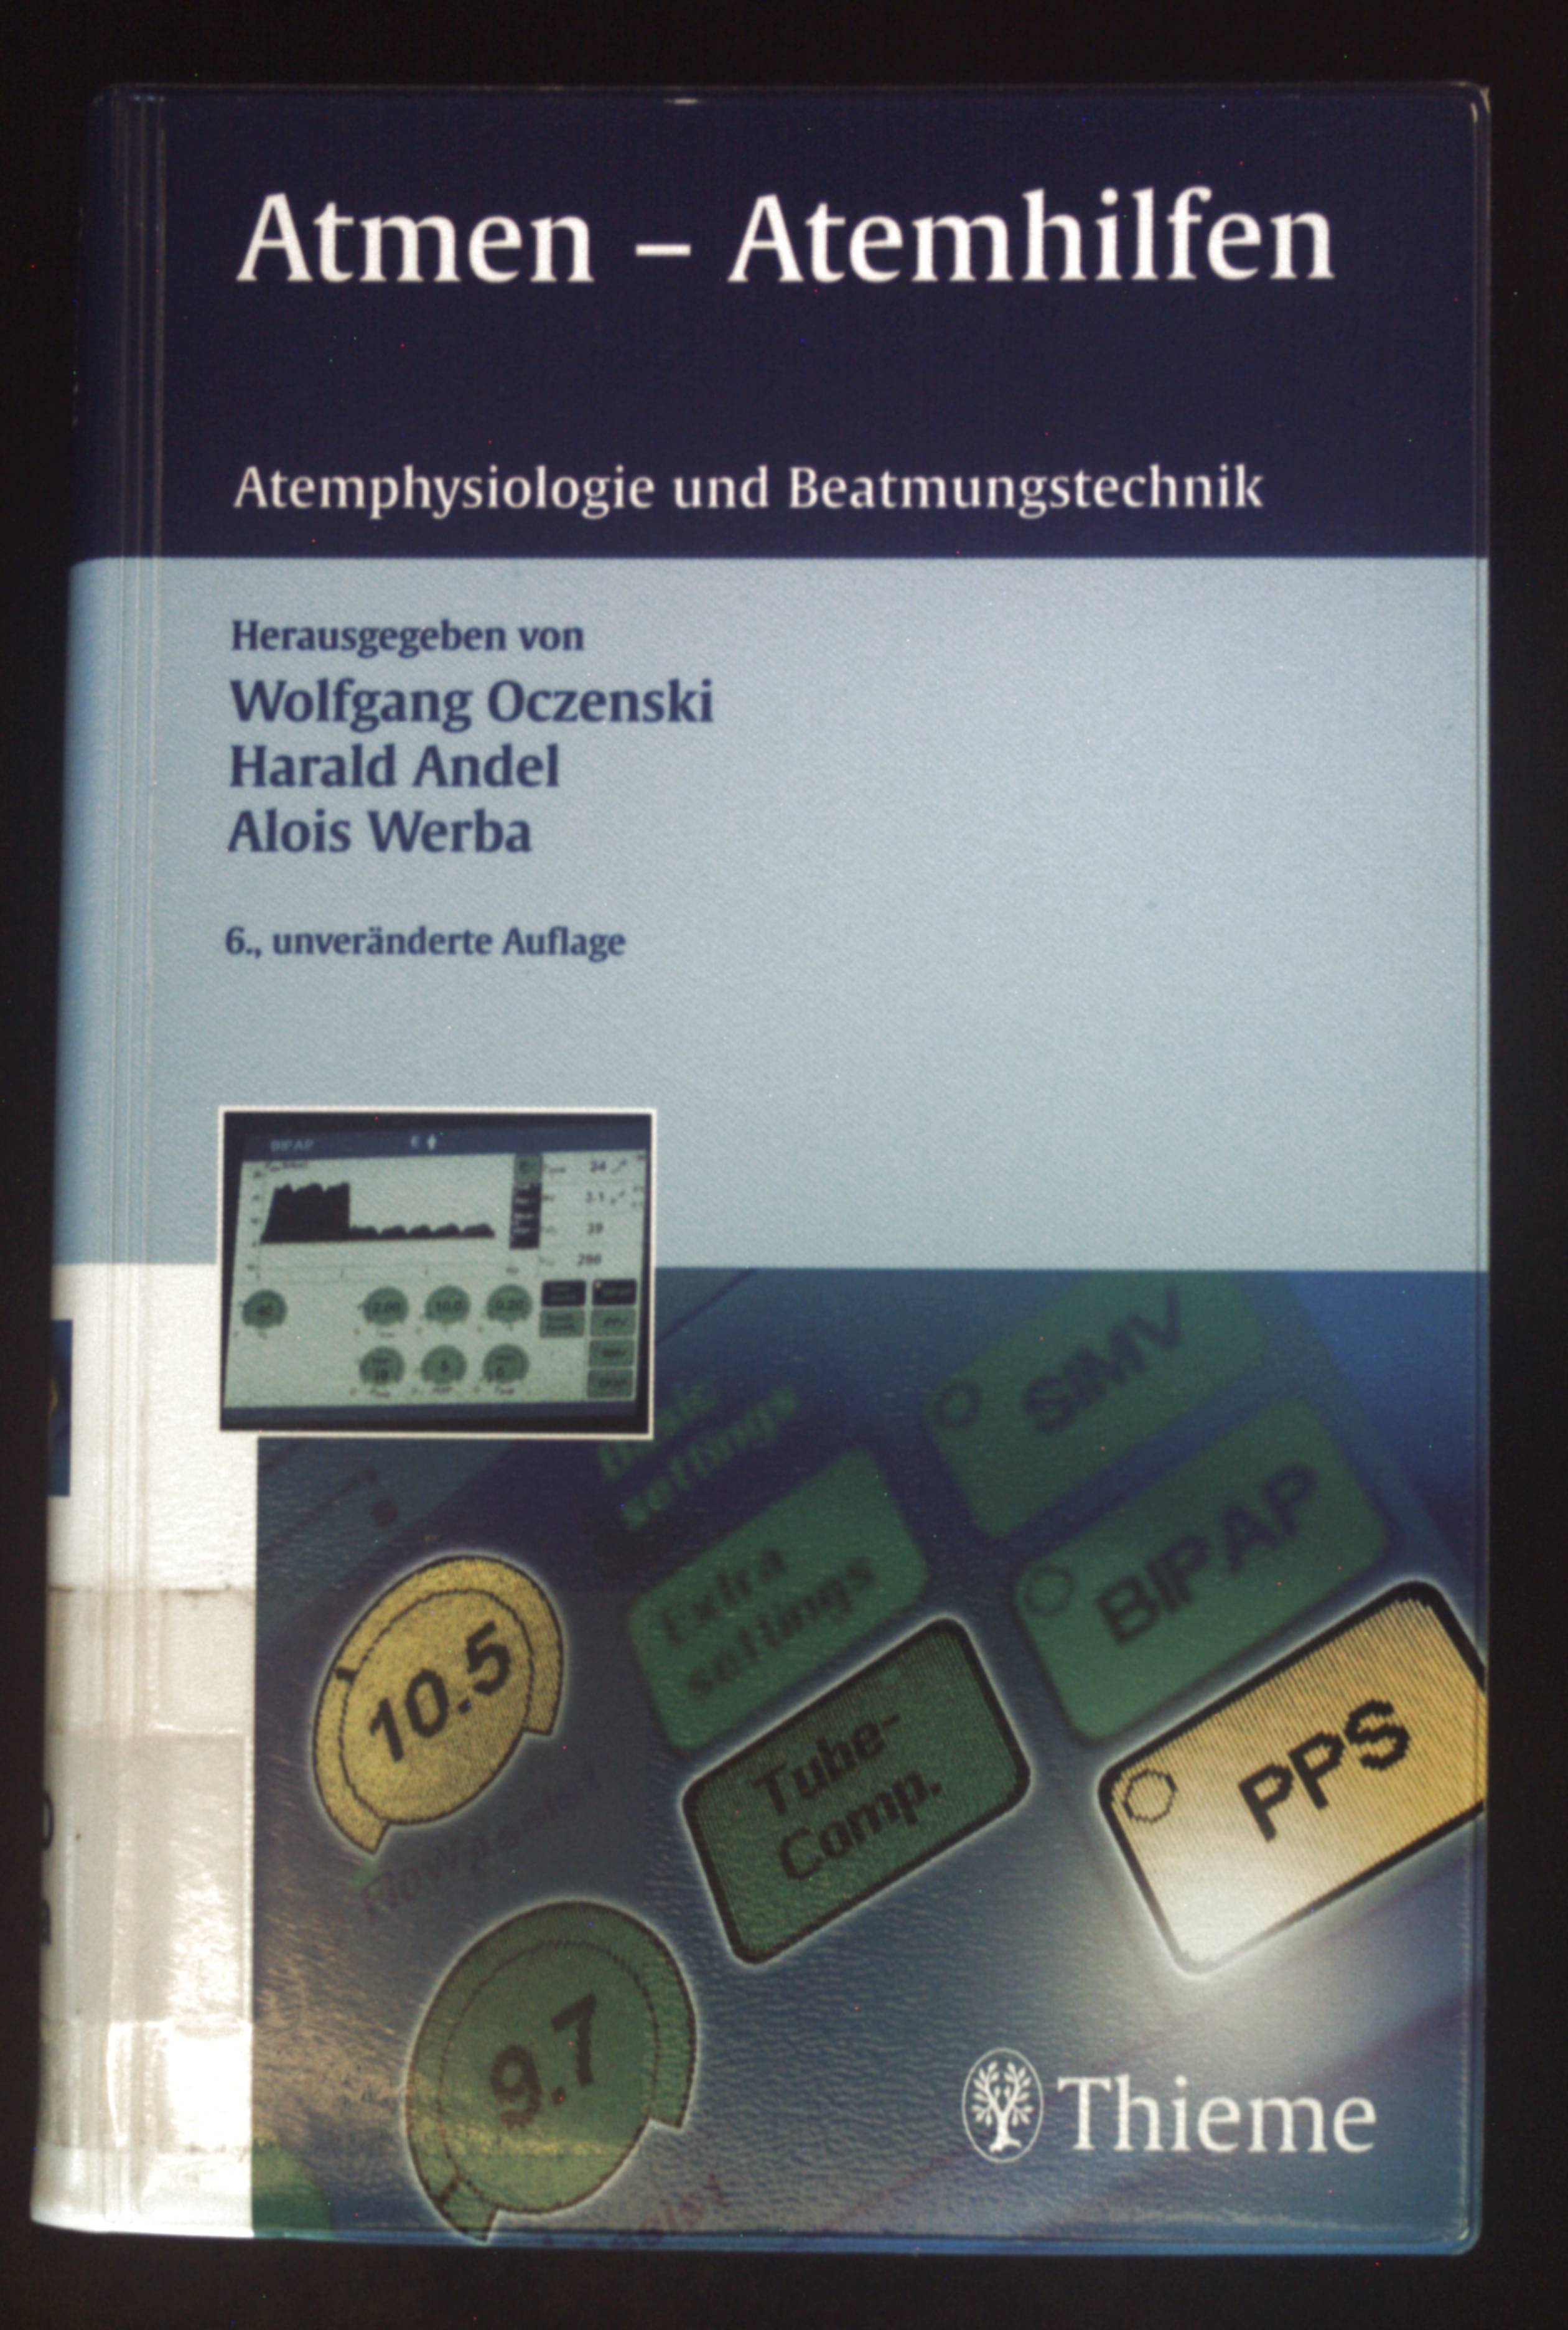 Atmen - Atemhilfen : Atemphysiologie und Beatmungstechnik. - Oczenski, Wolfgang, Alois Werba und Harald Andel